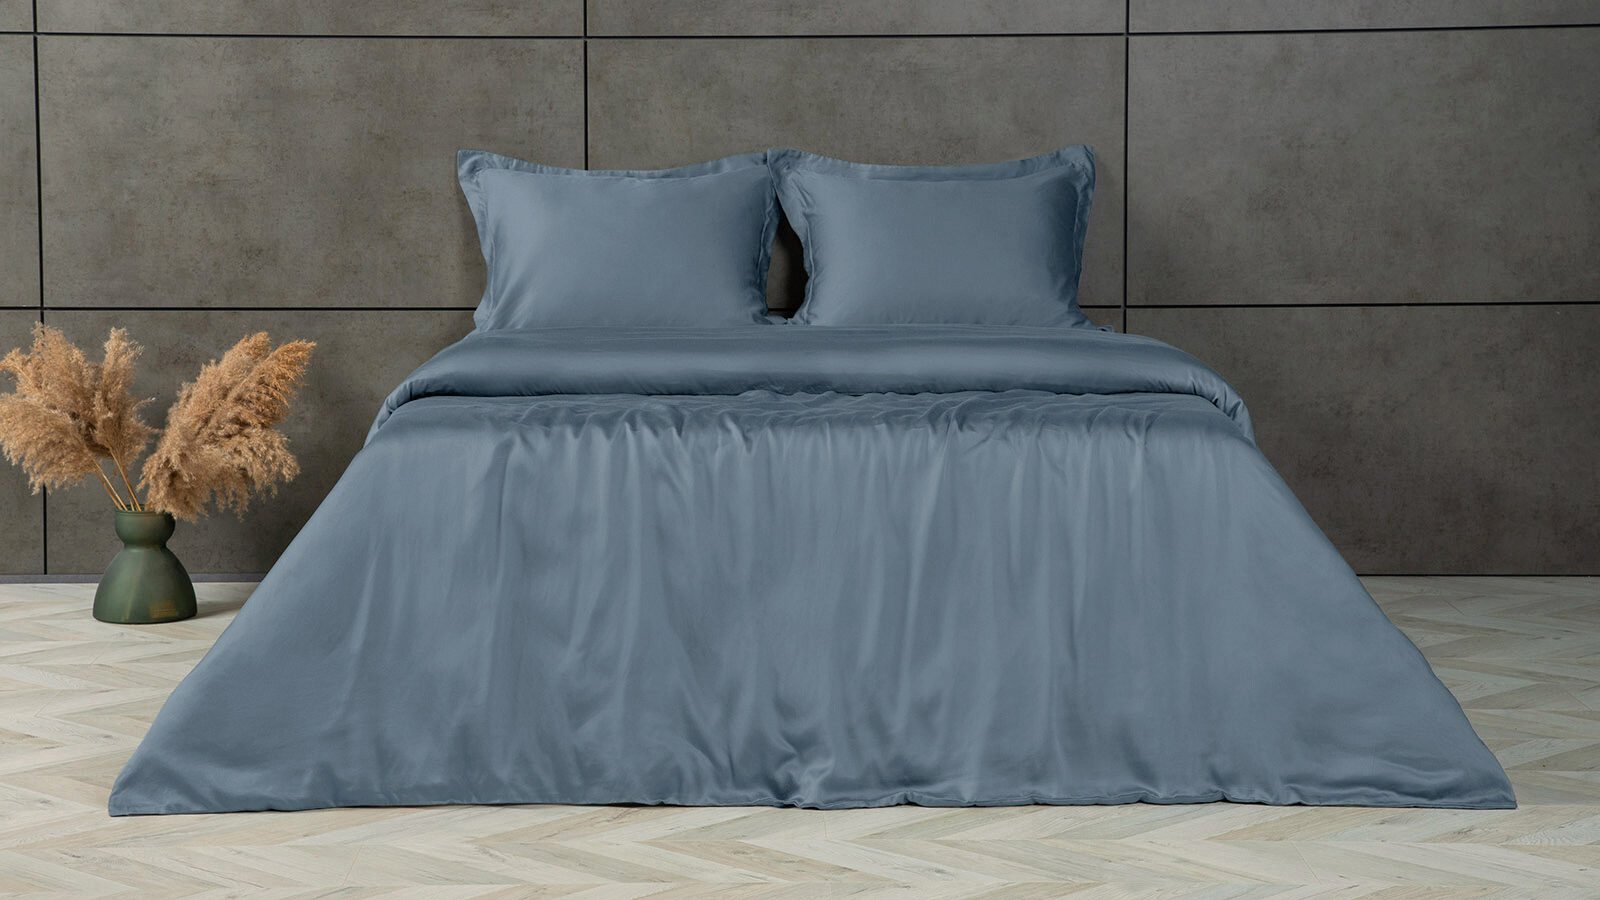 Комплект постельного белья Solid Tencel, цвет Синий металлик комплект постельного белья solid tencel серебристый иней